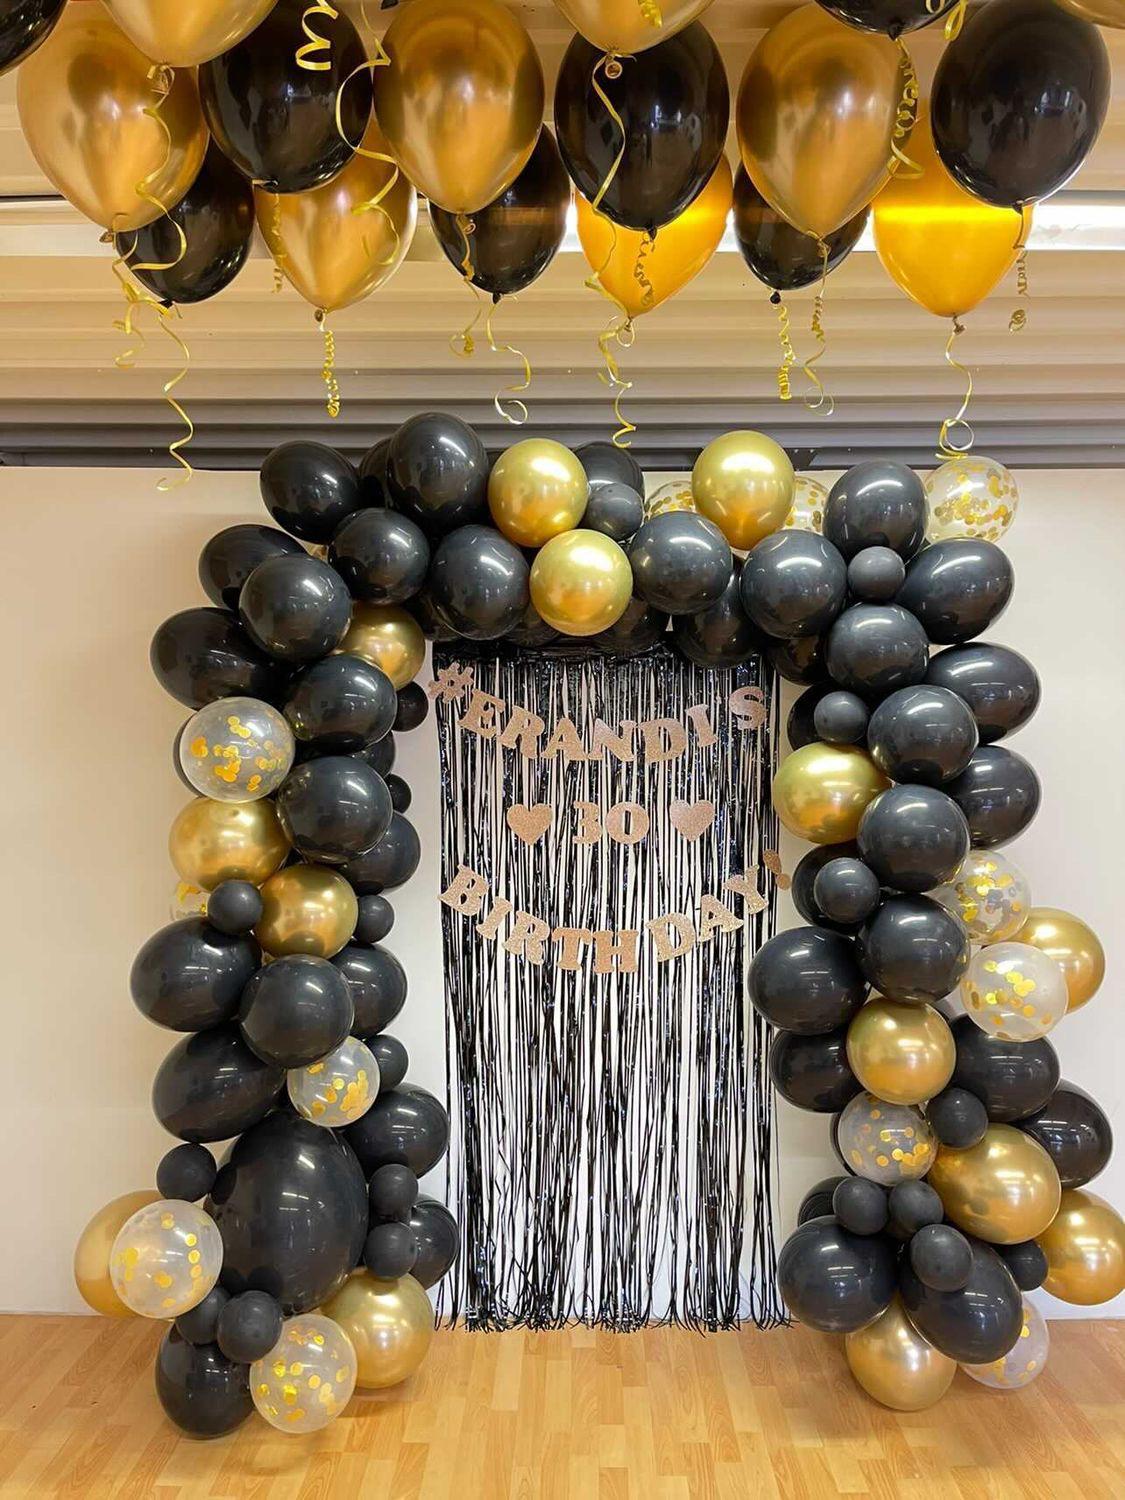 Elegant Ballongbåge i guld och svart